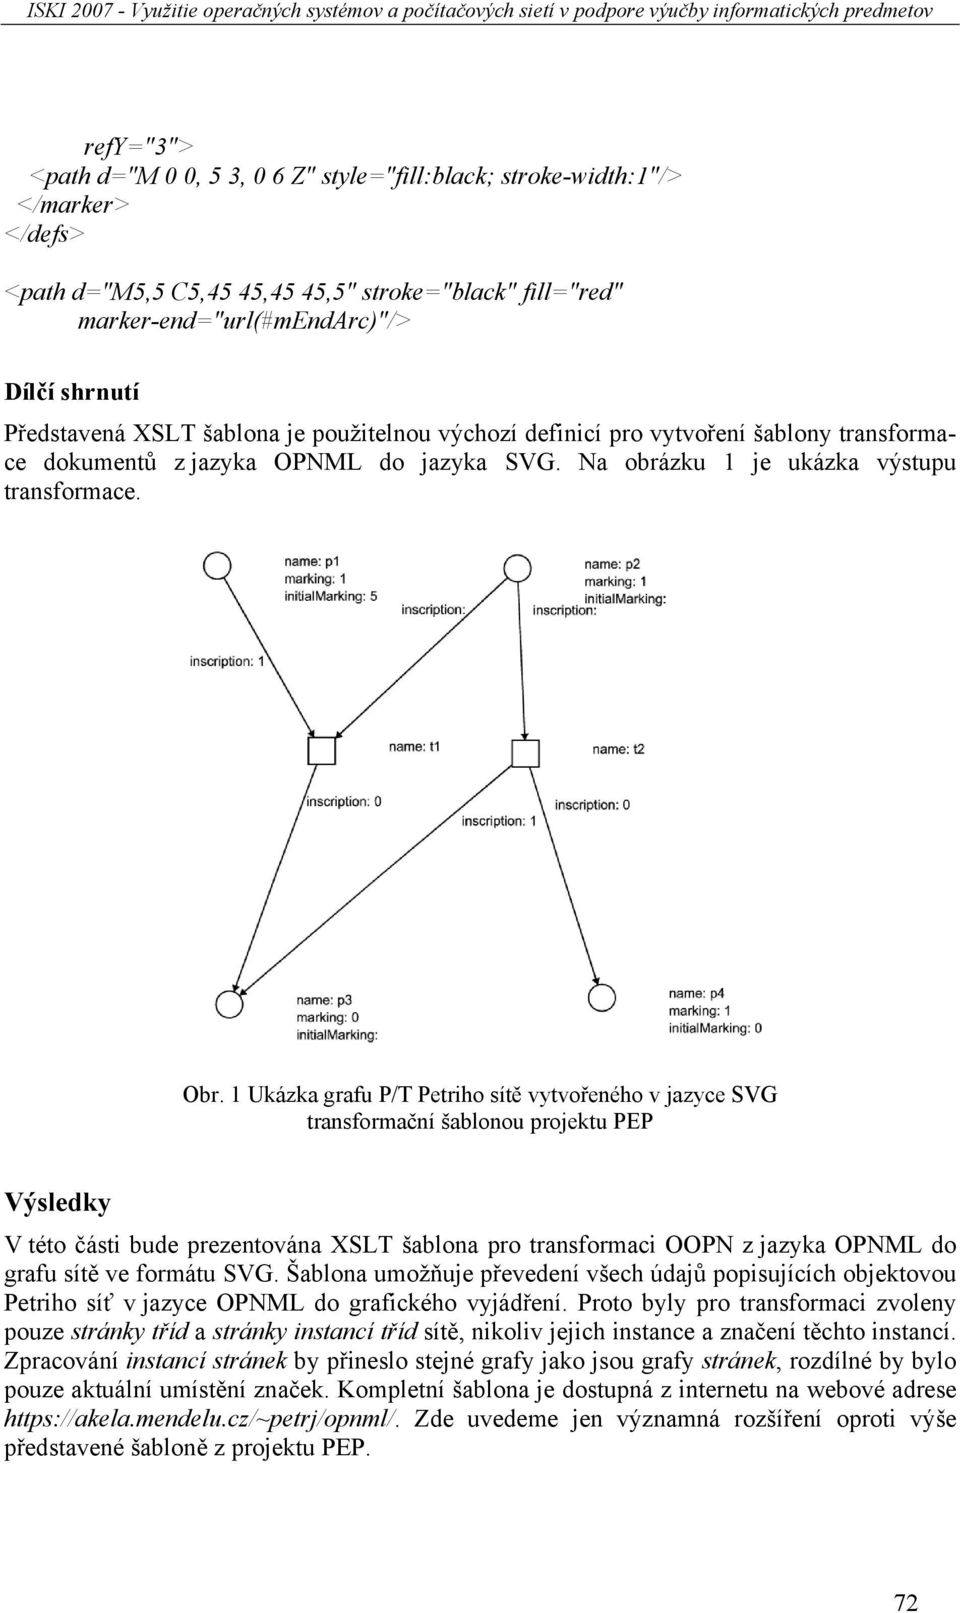 1 Ukázka grafu P/T Petriho sítě vytvořeného v jazyce SVG transformační šablonou projektu PEP Výsledky V této části bude prezentována XSLT šablona pro transformaci OOPN z jazyka OPNML do grafu sítě ve